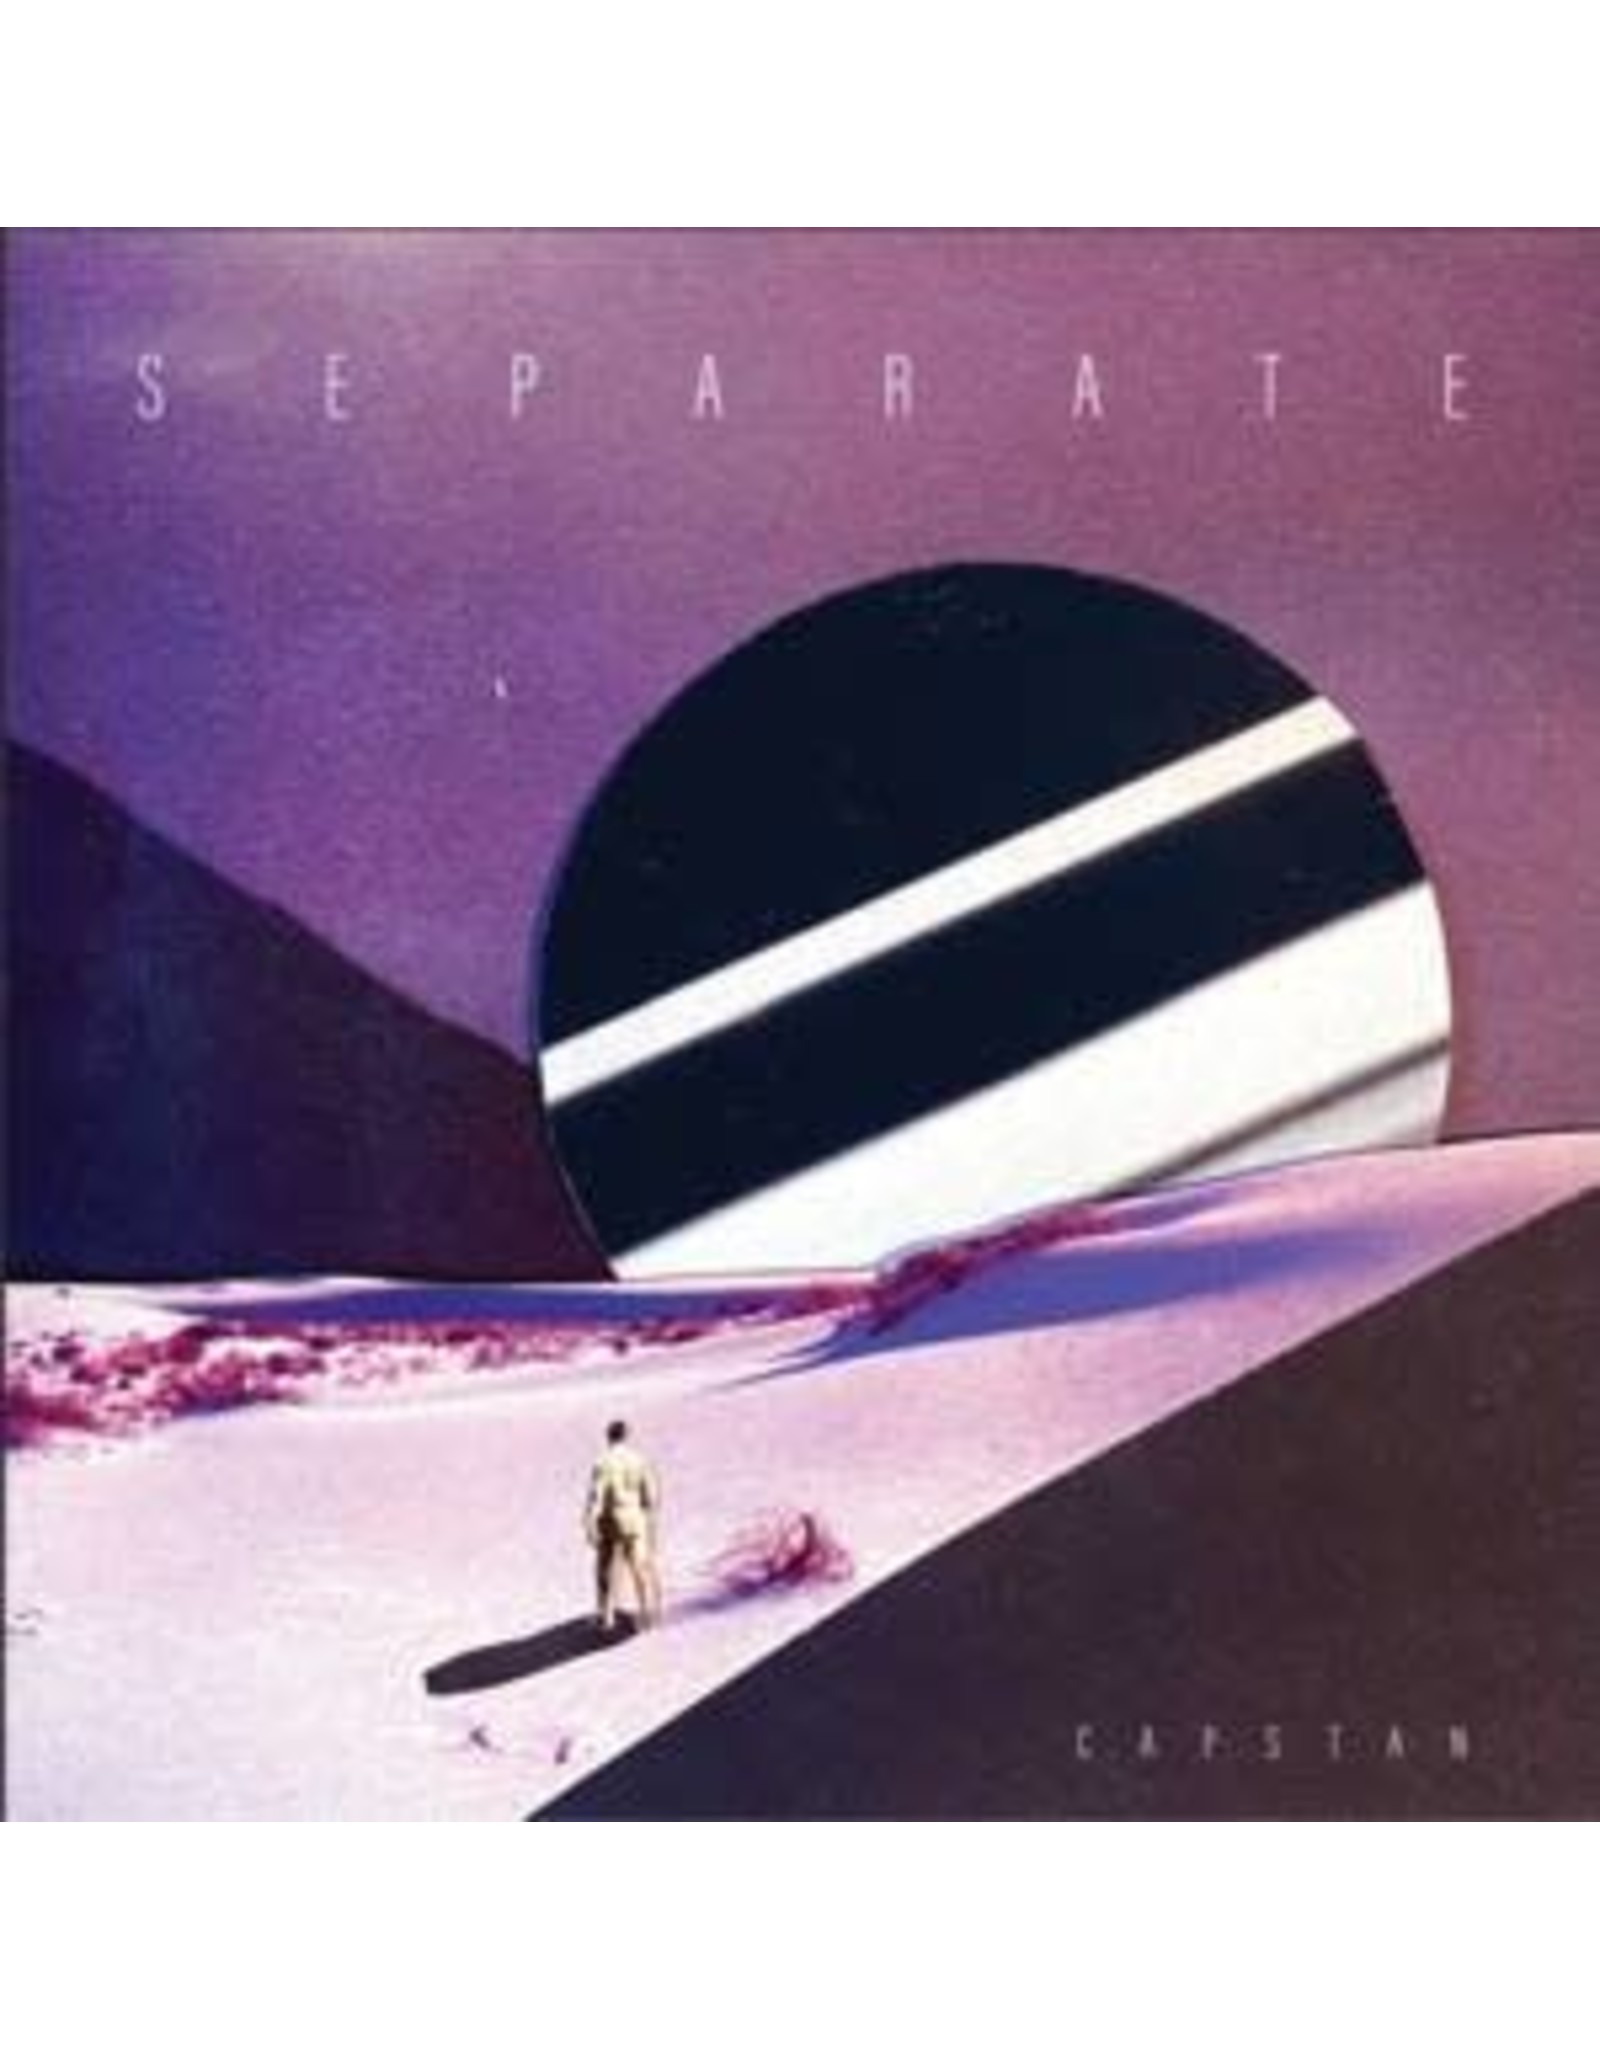 Capstan - Separate LP